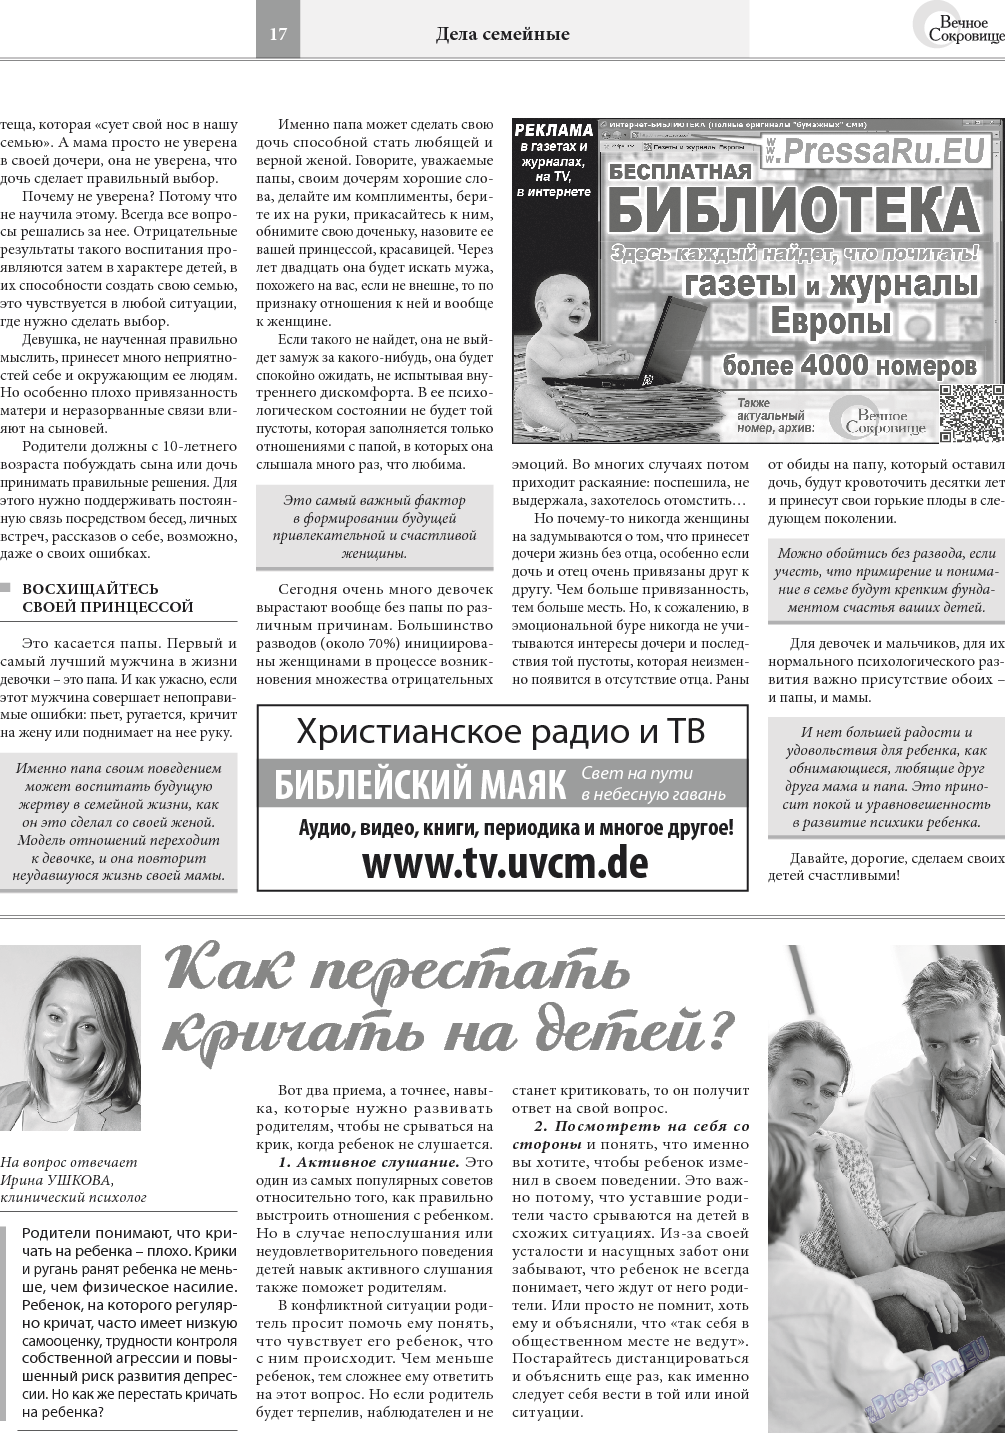 Вечное сокровище, газета. 2018 №1 стр.17